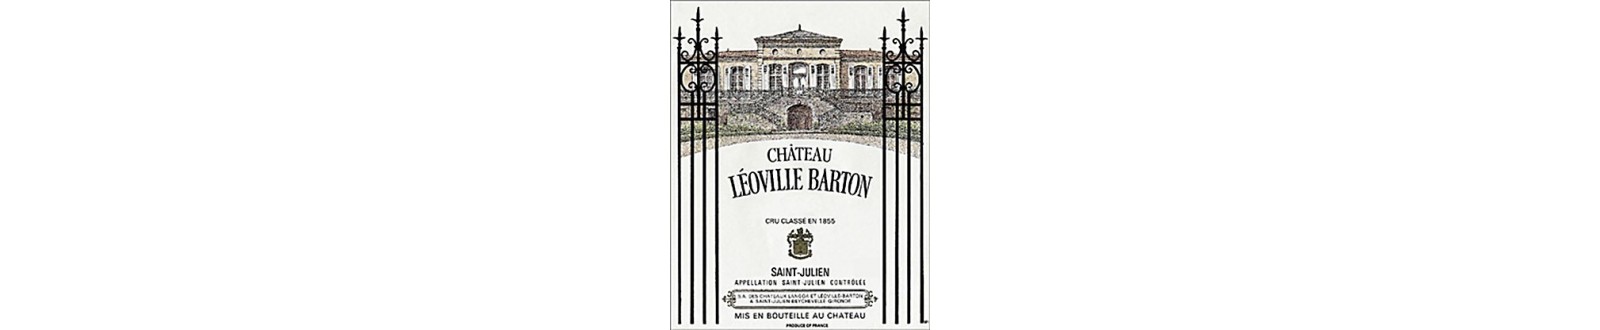 Vin(s) du Château Leoville Barton